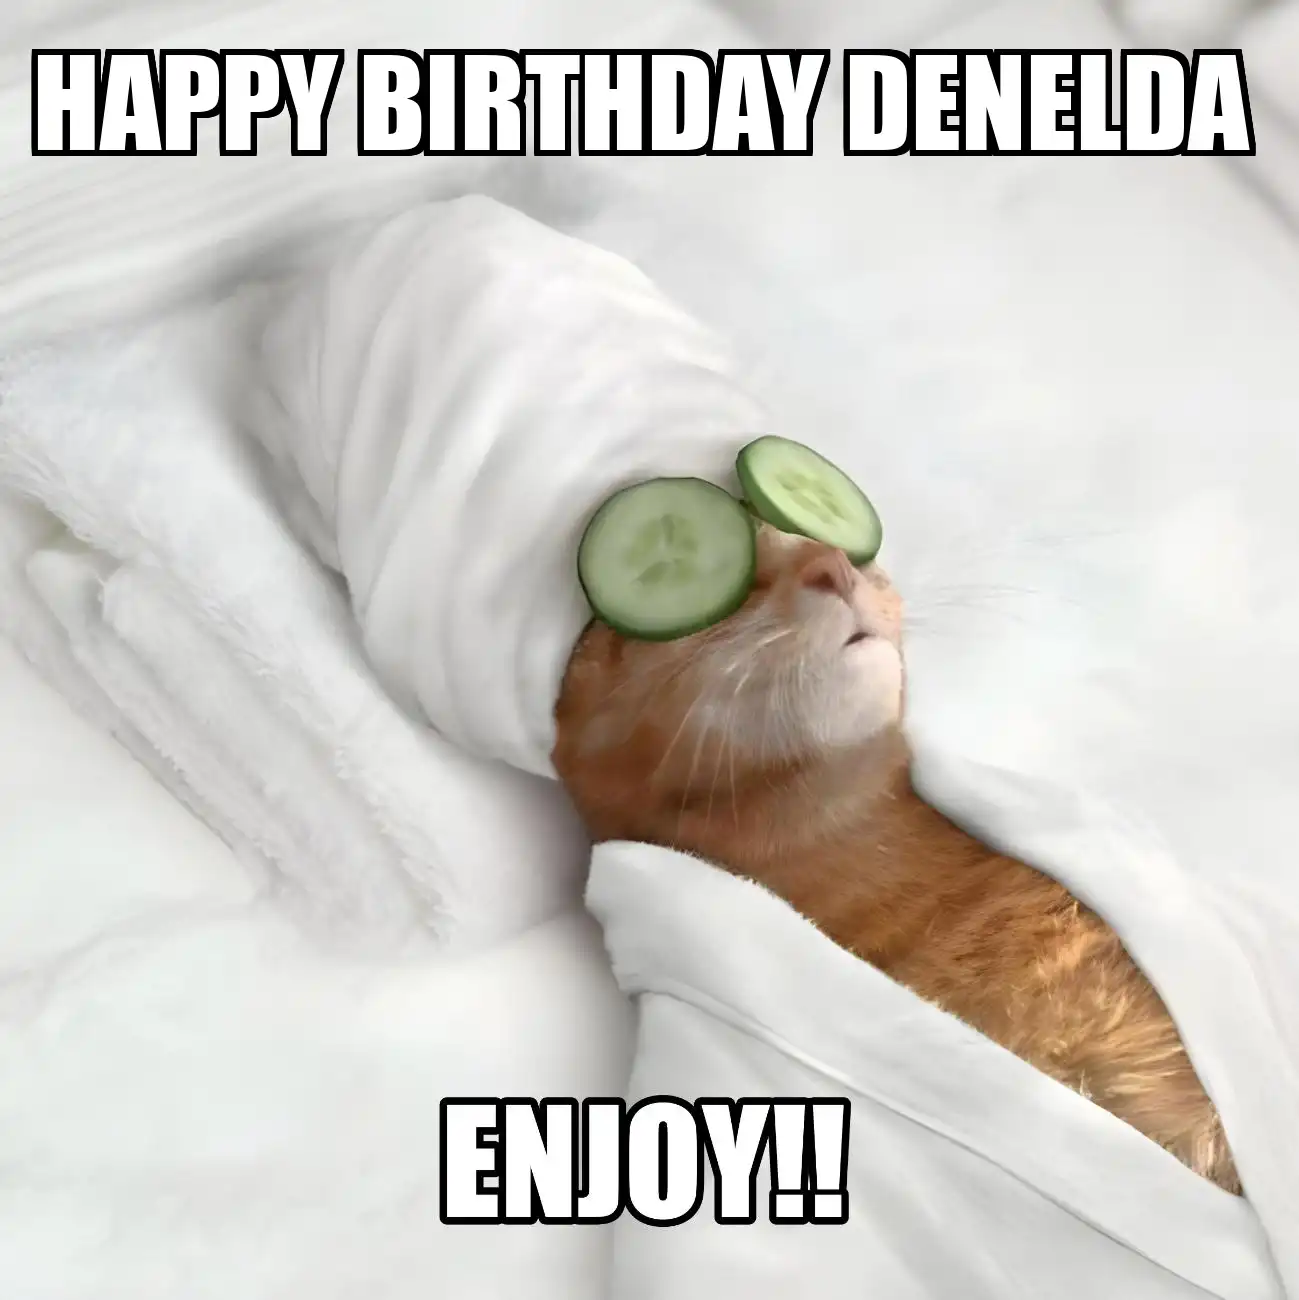 Happy Birthday Denelda Enjoy Cat Meme